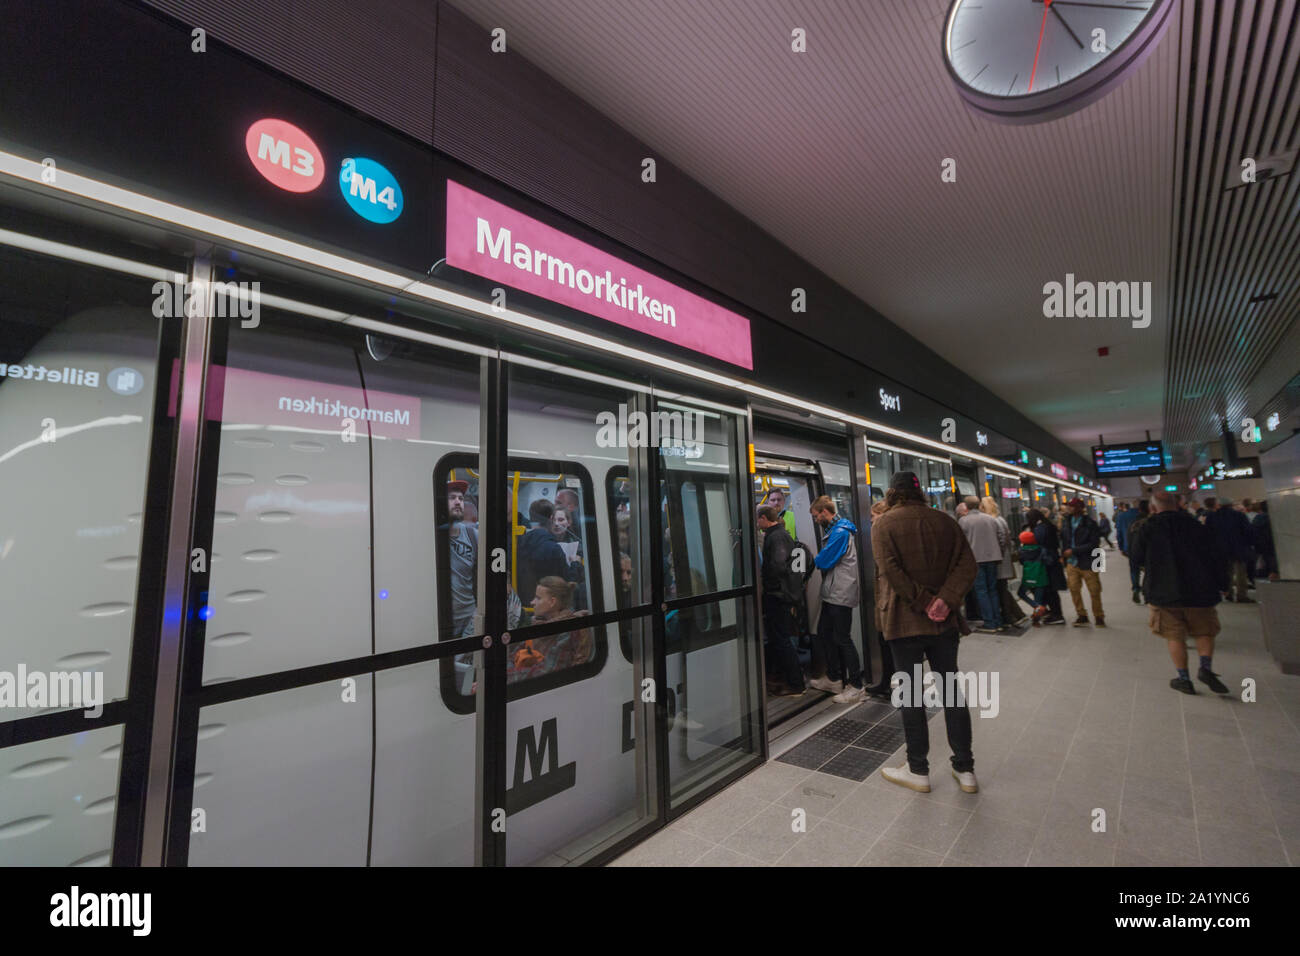 Copenaghen, Zelanda Danimarca - 29 9 2019: persone che stanno cercando nuove M3 Cityringen metro linea. Stazione Marmorkirken Foto Stock